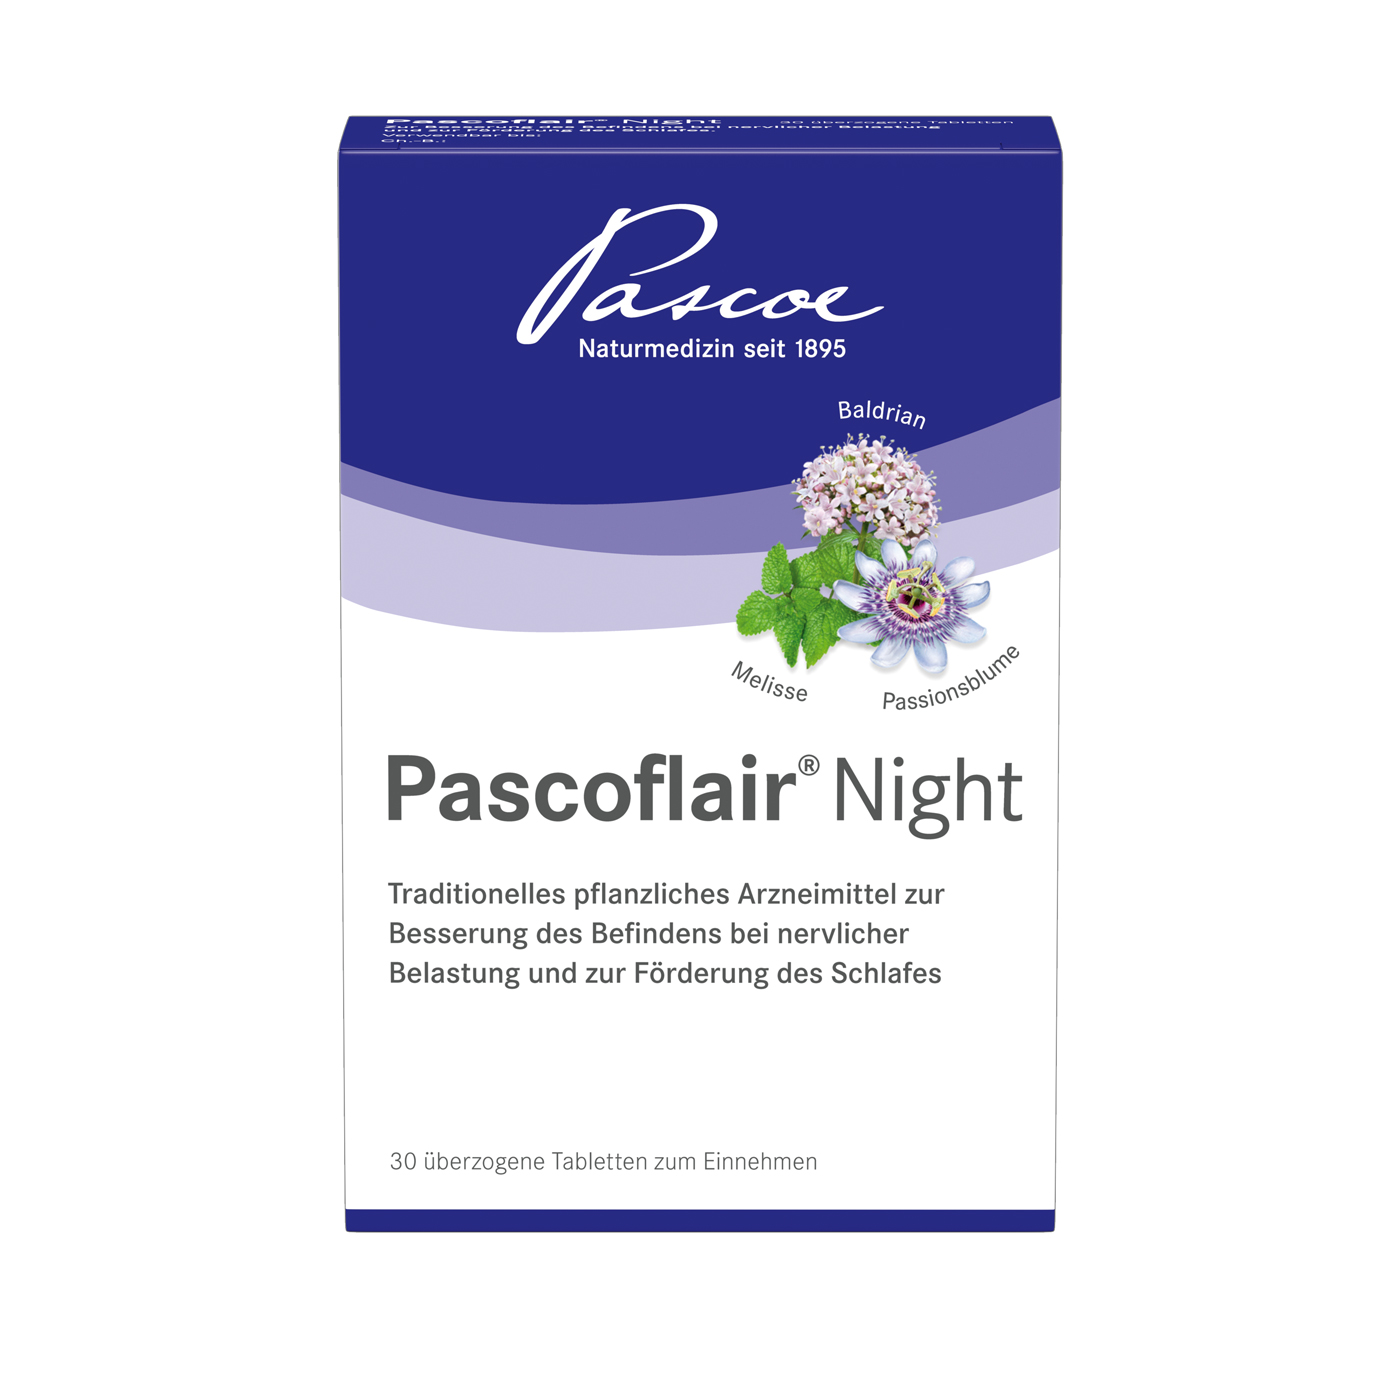 Pascoflair NightPascoflair Night